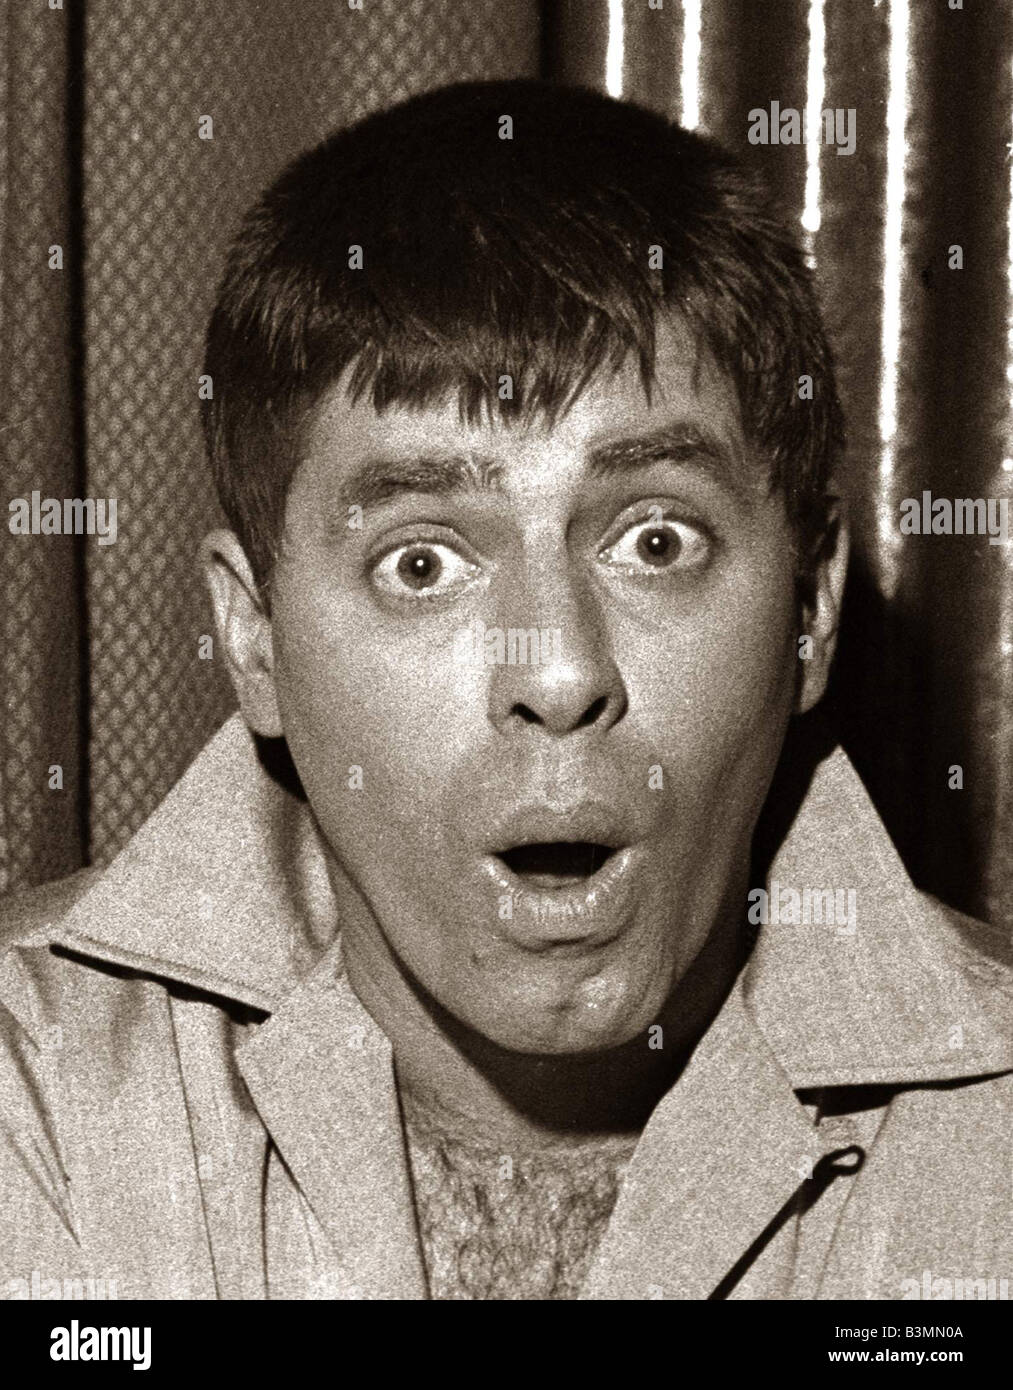 Comédien Jerry Lewis Pulling funny face homme Décembre 1958 Mirrorpix Banque D'Images